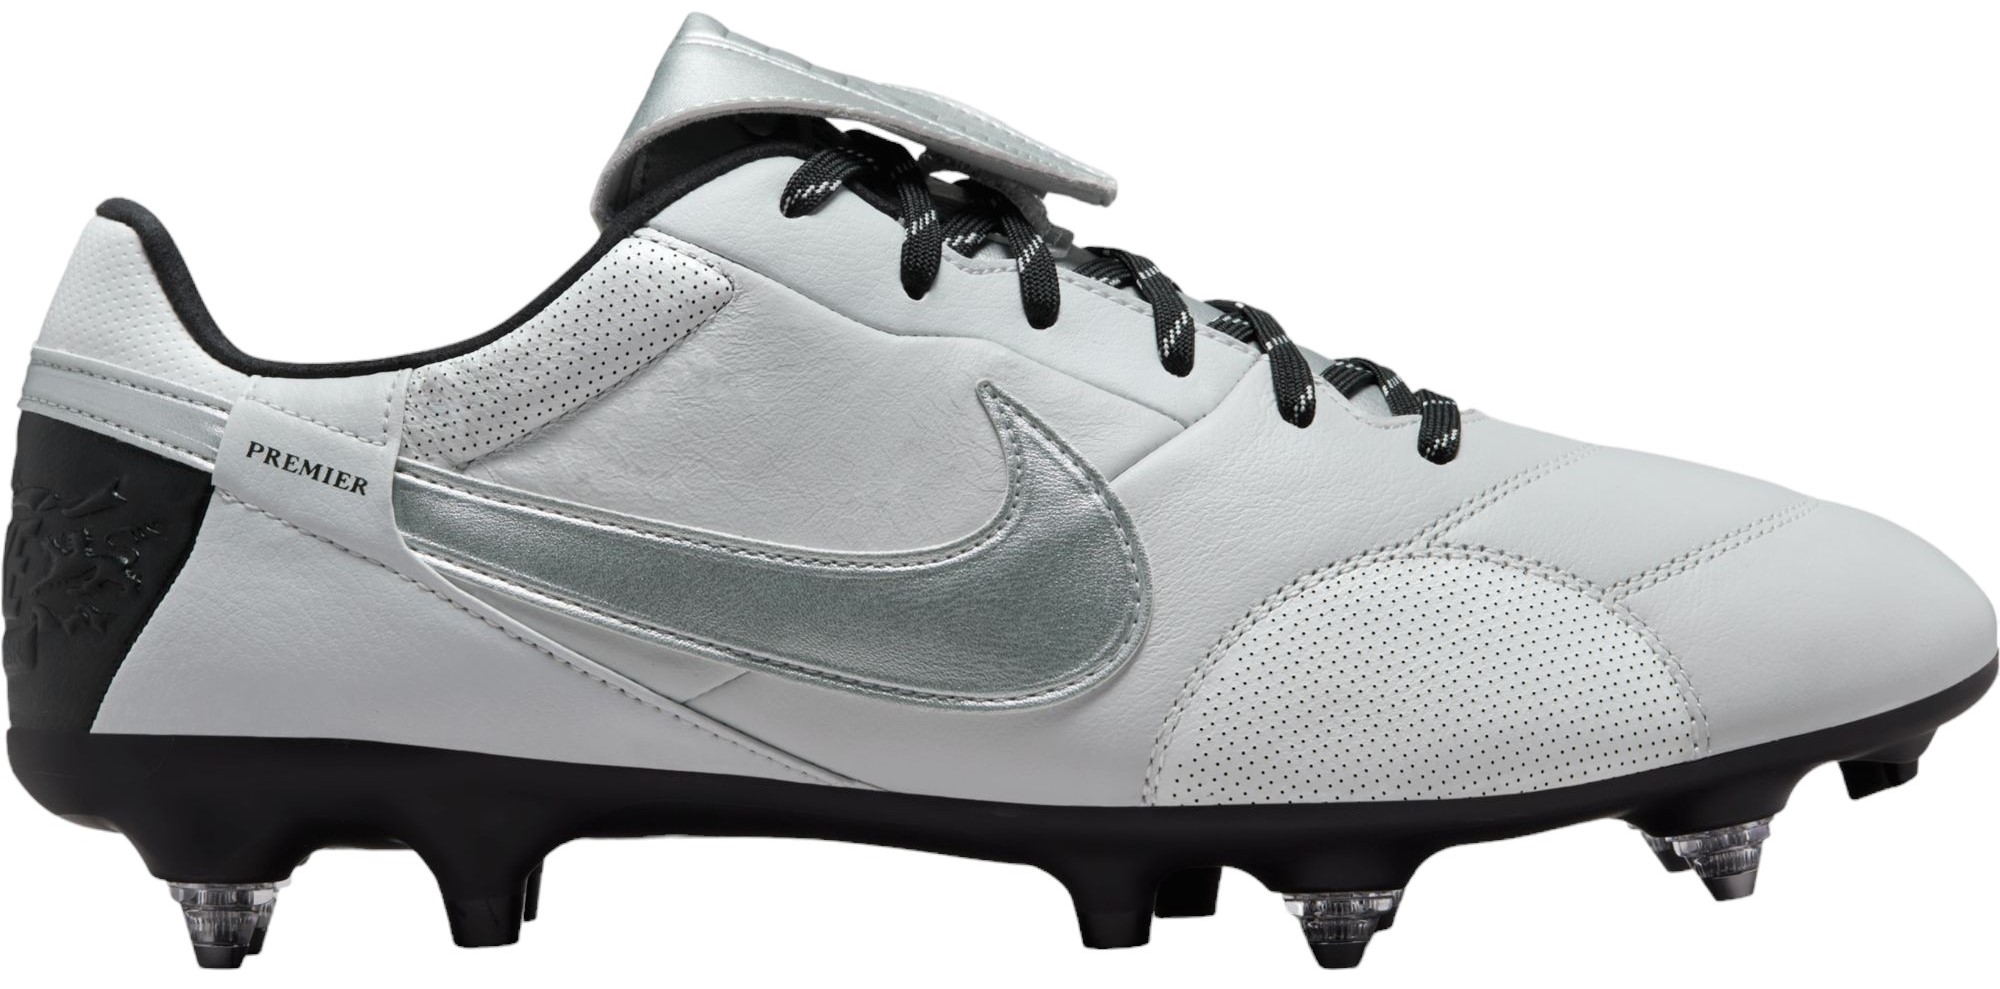 Fodboldstøvler Nike THE PREMIER III SG-PRO AC